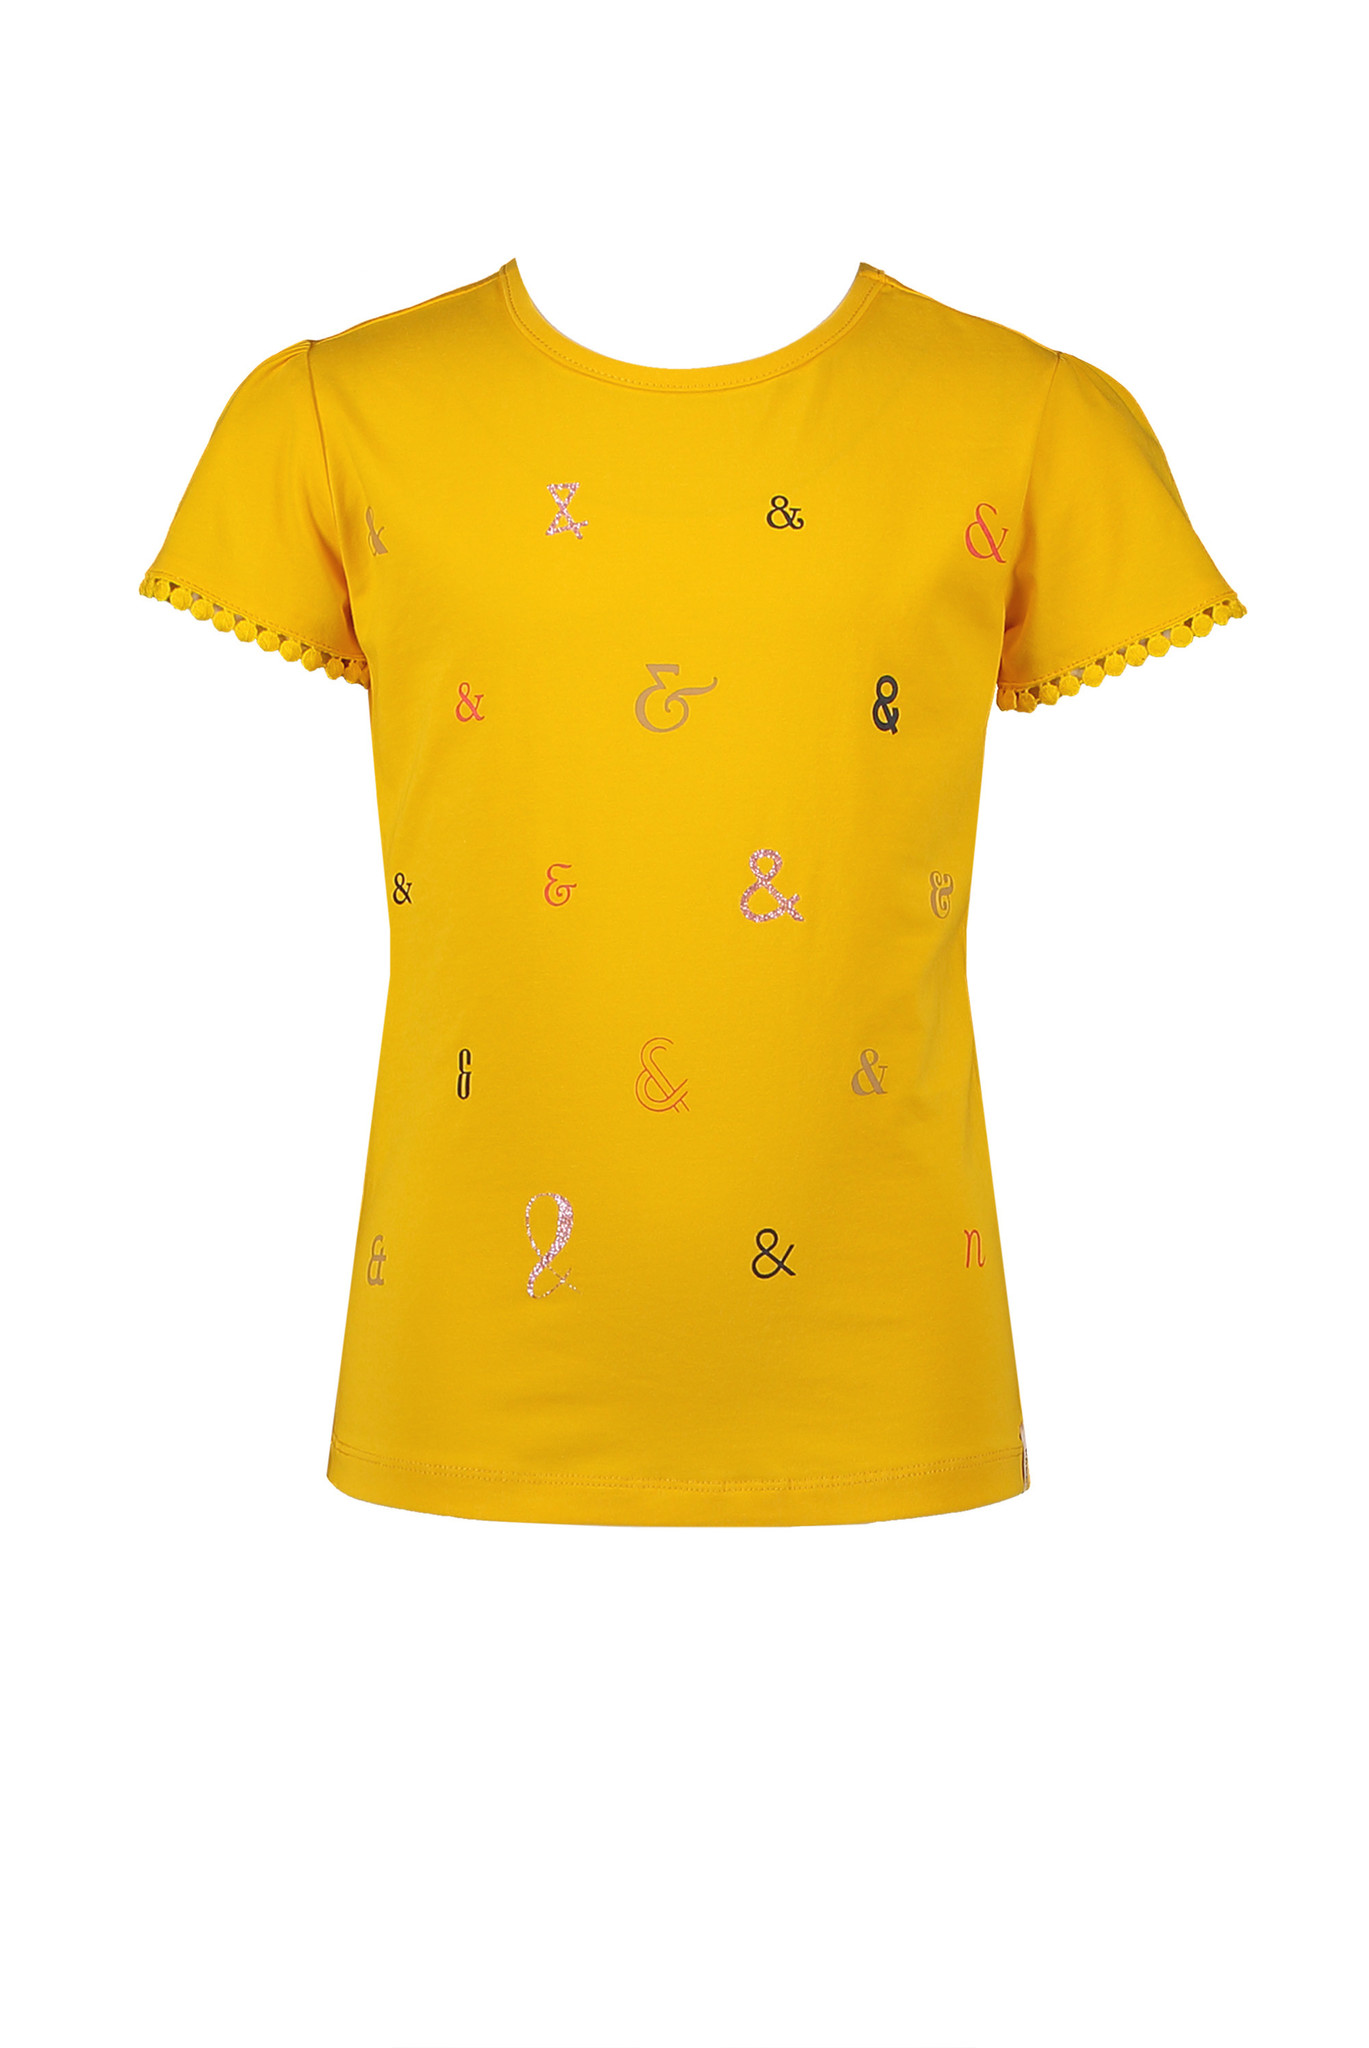 NoNo meisjes shirt N202-5401/507 geel